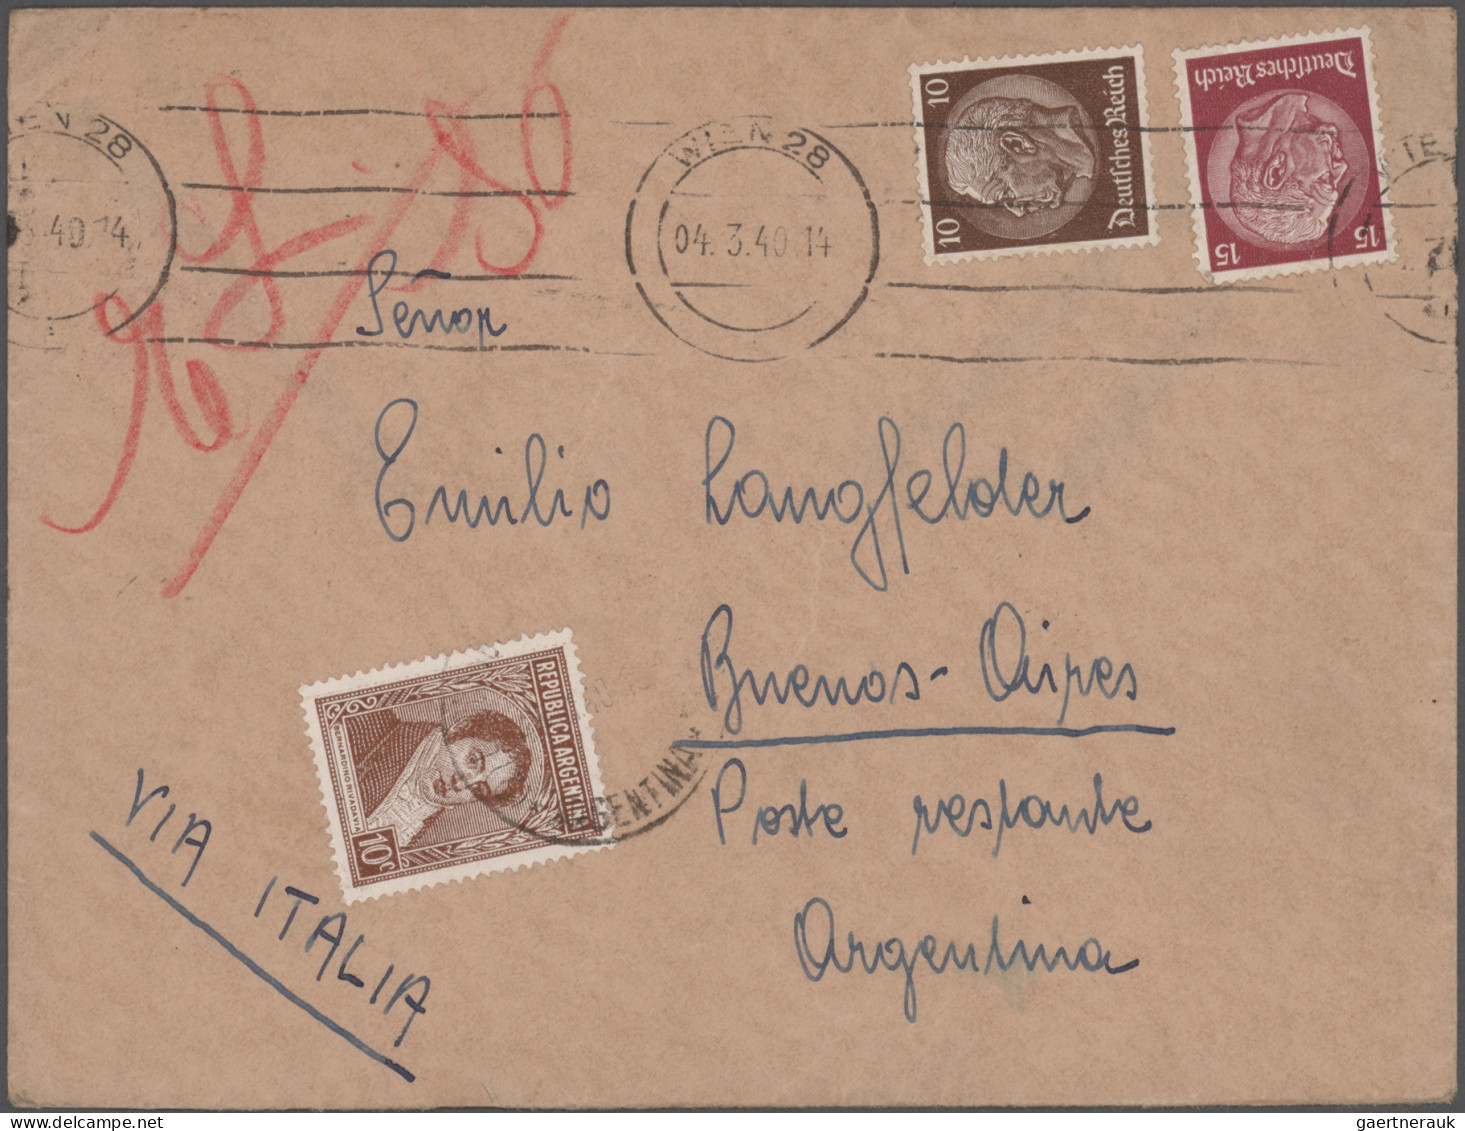 Deutsches Reich: 1933/1943, Destination ARGENTINIEN, außergewöhnliche Sammlung v